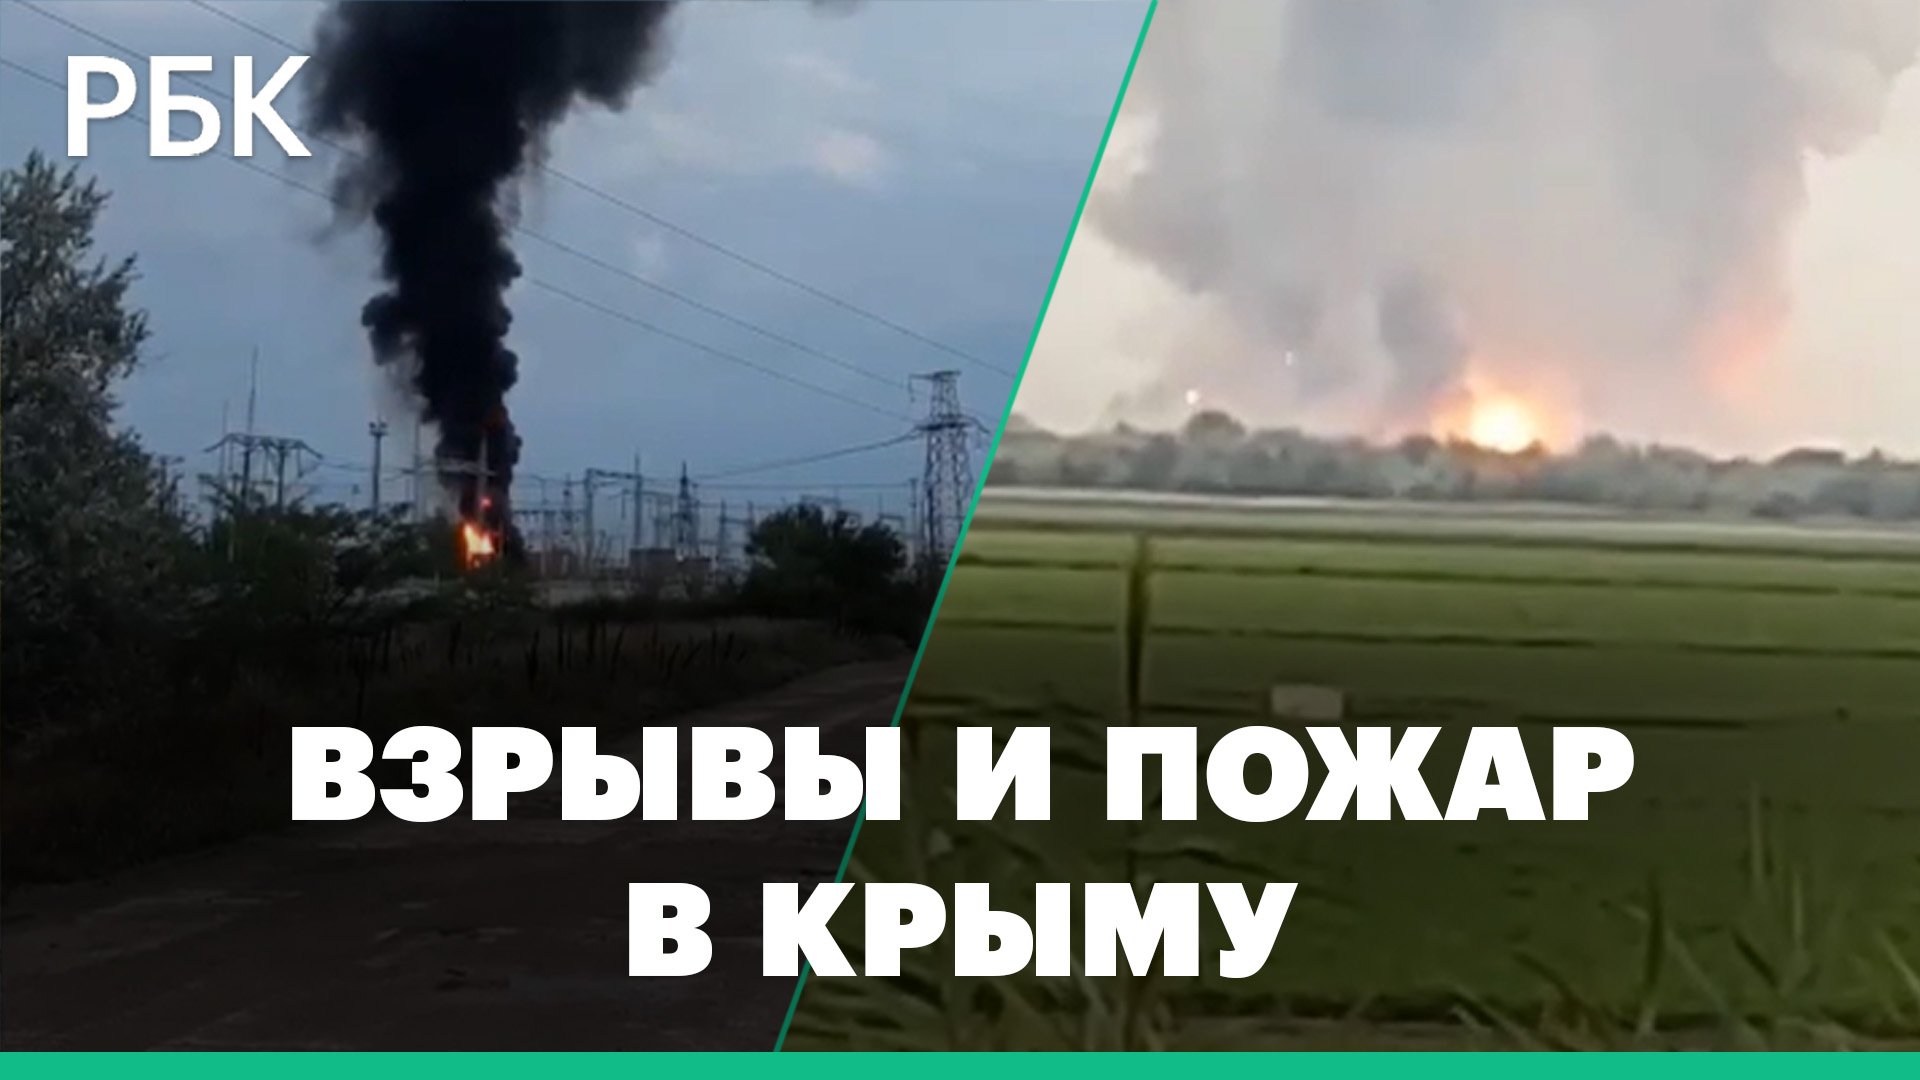 Рядом с селом на севере Крыма взрываются боеприпасы, два человека пострадали